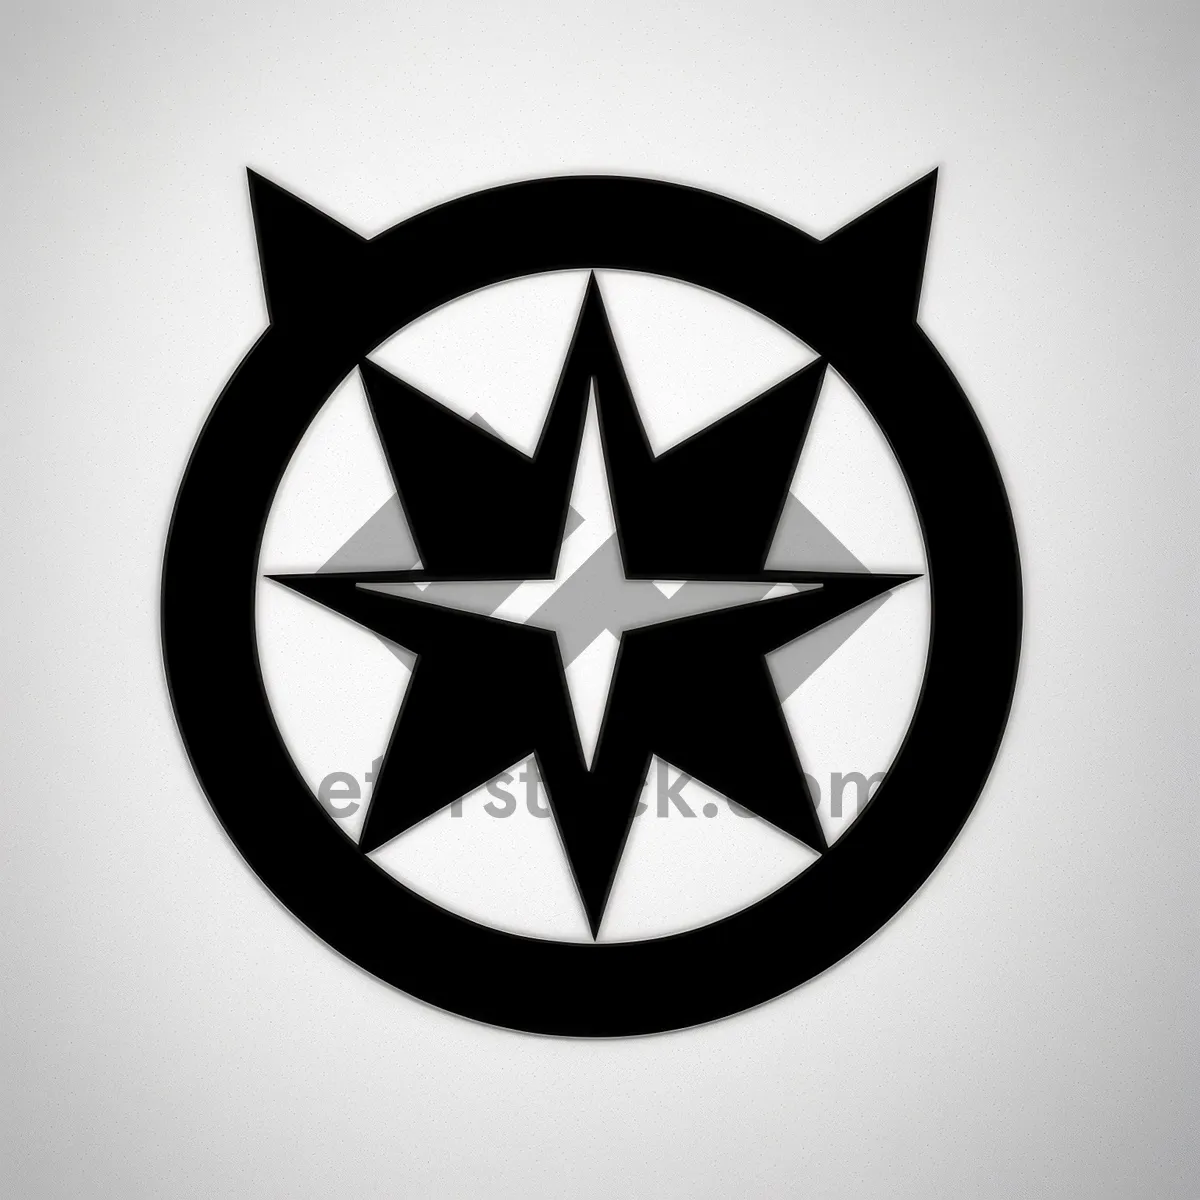 Picture of Black Heraldic Symbol Graphic Design Art